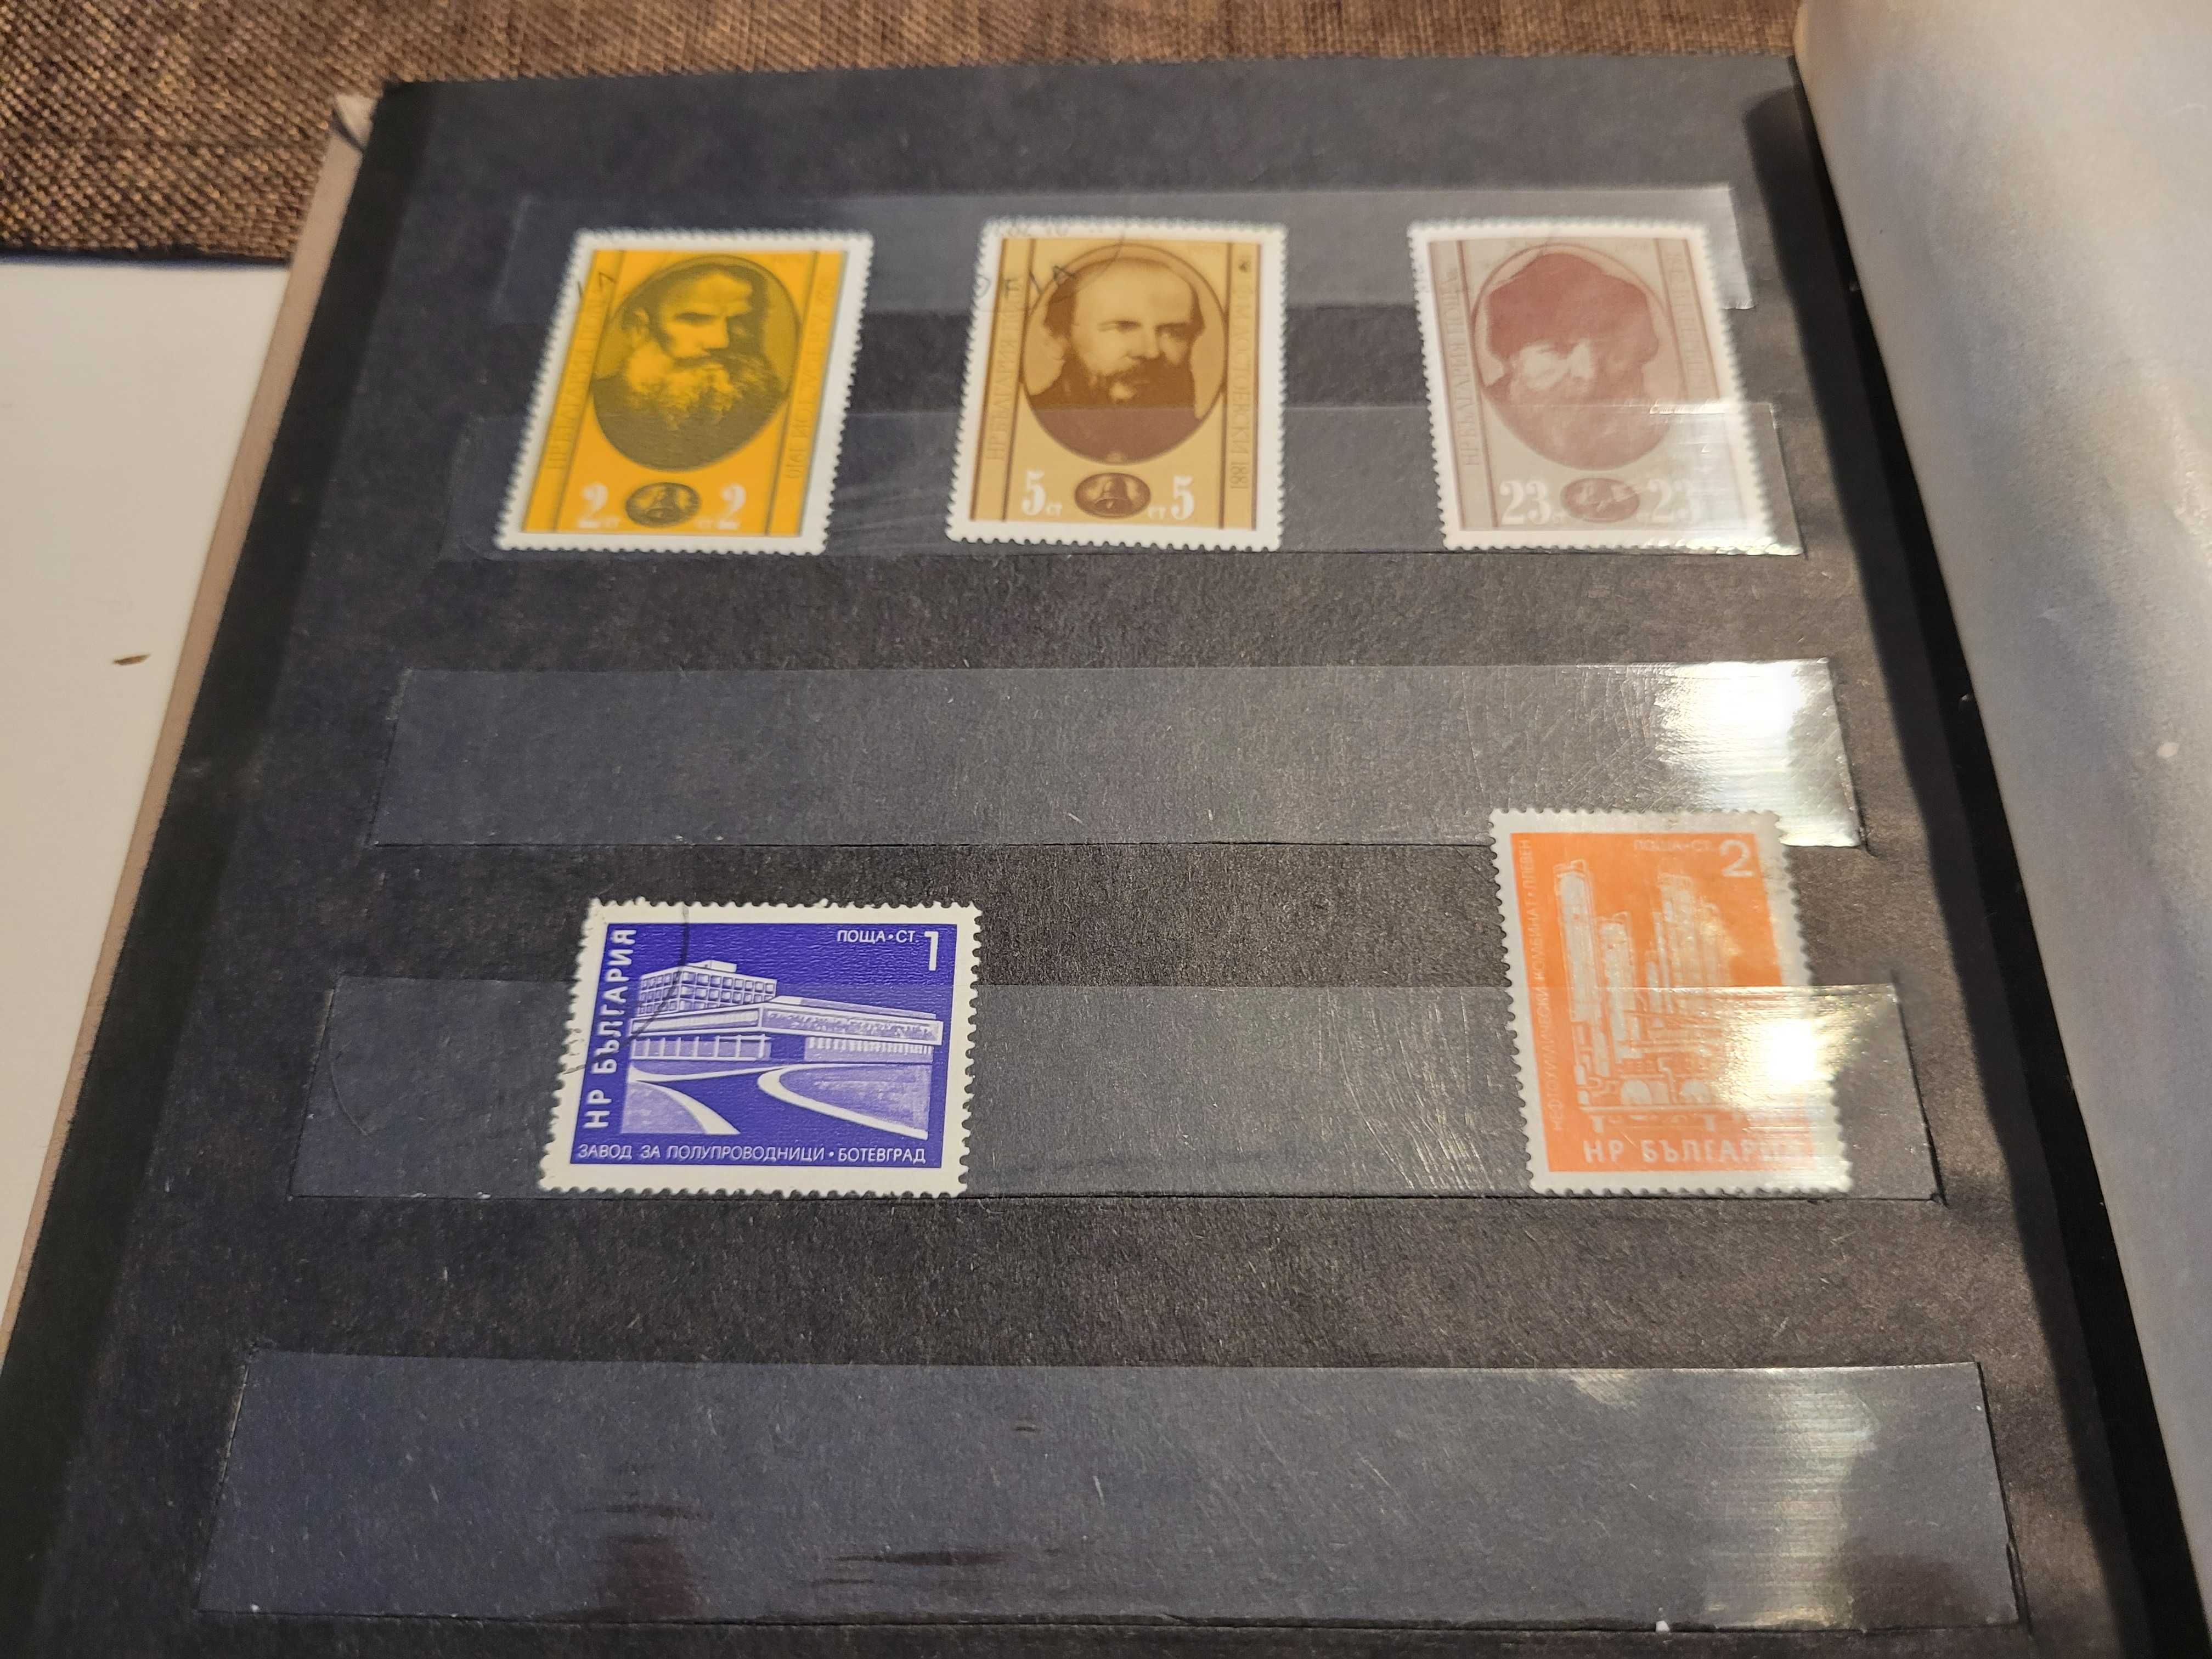 Klaser ze znaczkami, Bułgaria i DDR (stemplowane)